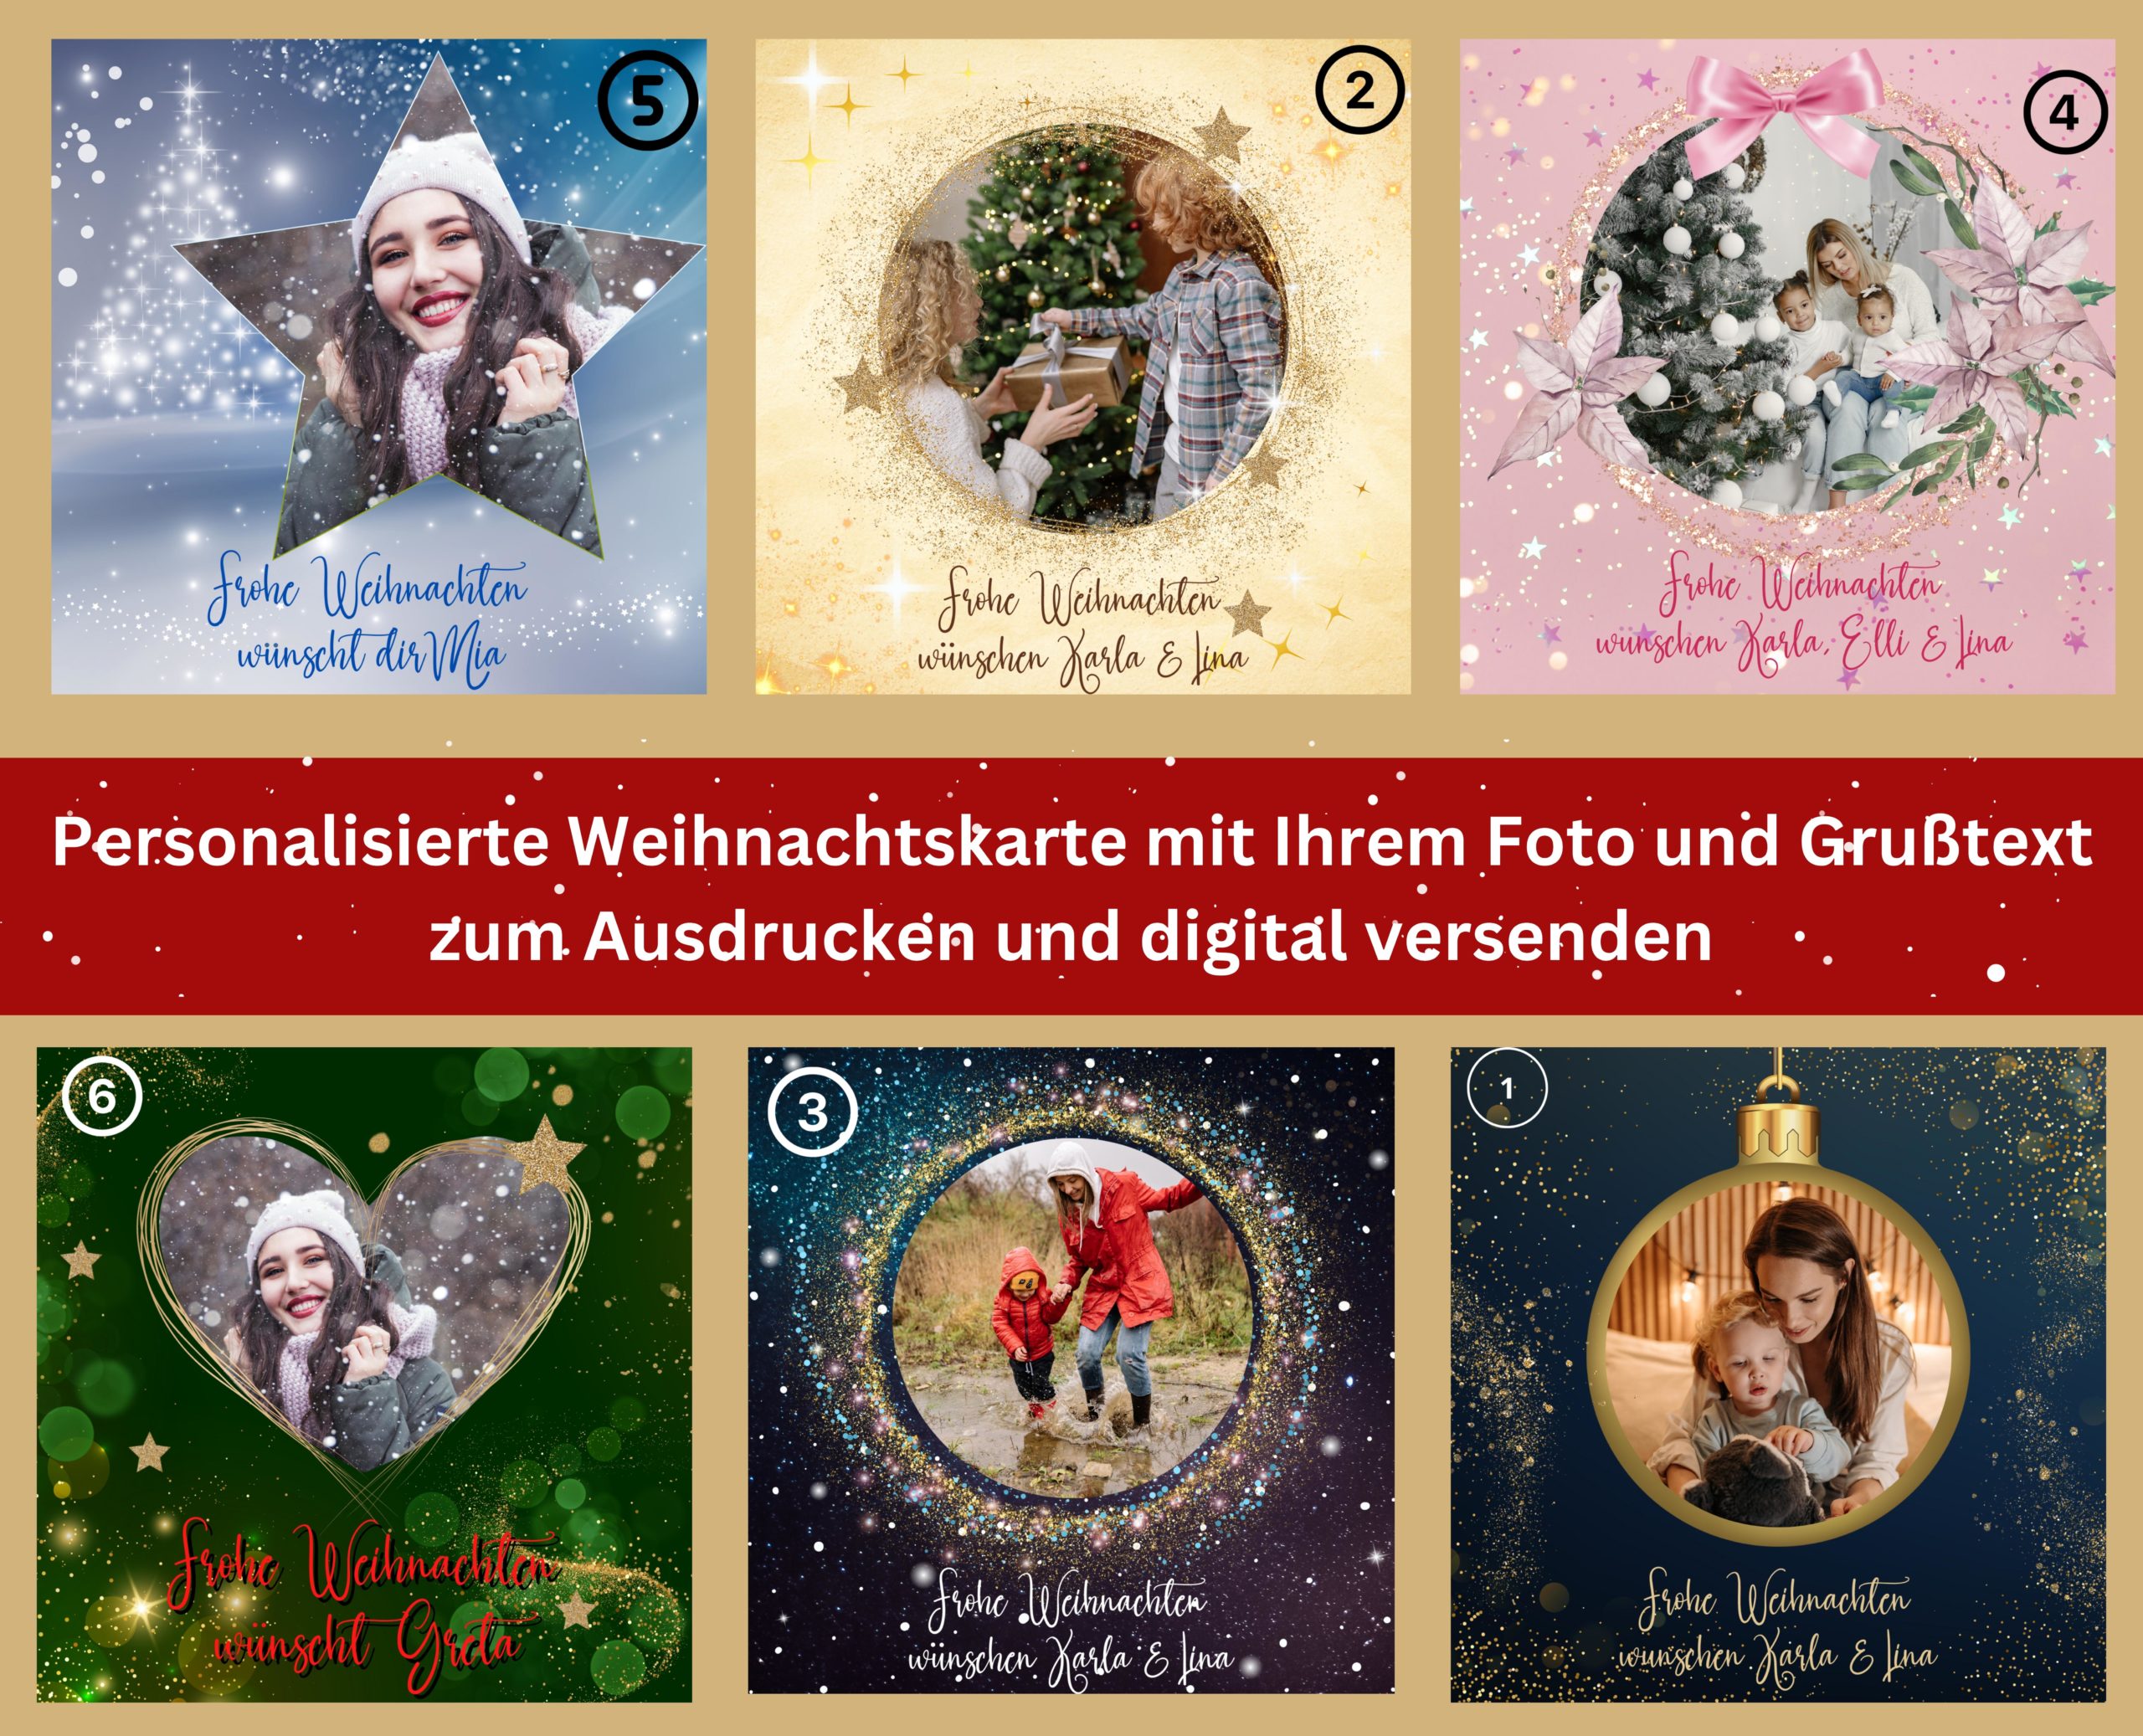 Weihnachtsgrußkarte personalisiert mit Foto, Name und Text - zum Ausdrucken oder/und digital versenden als e-Card - WhatsApp, , Allgemein